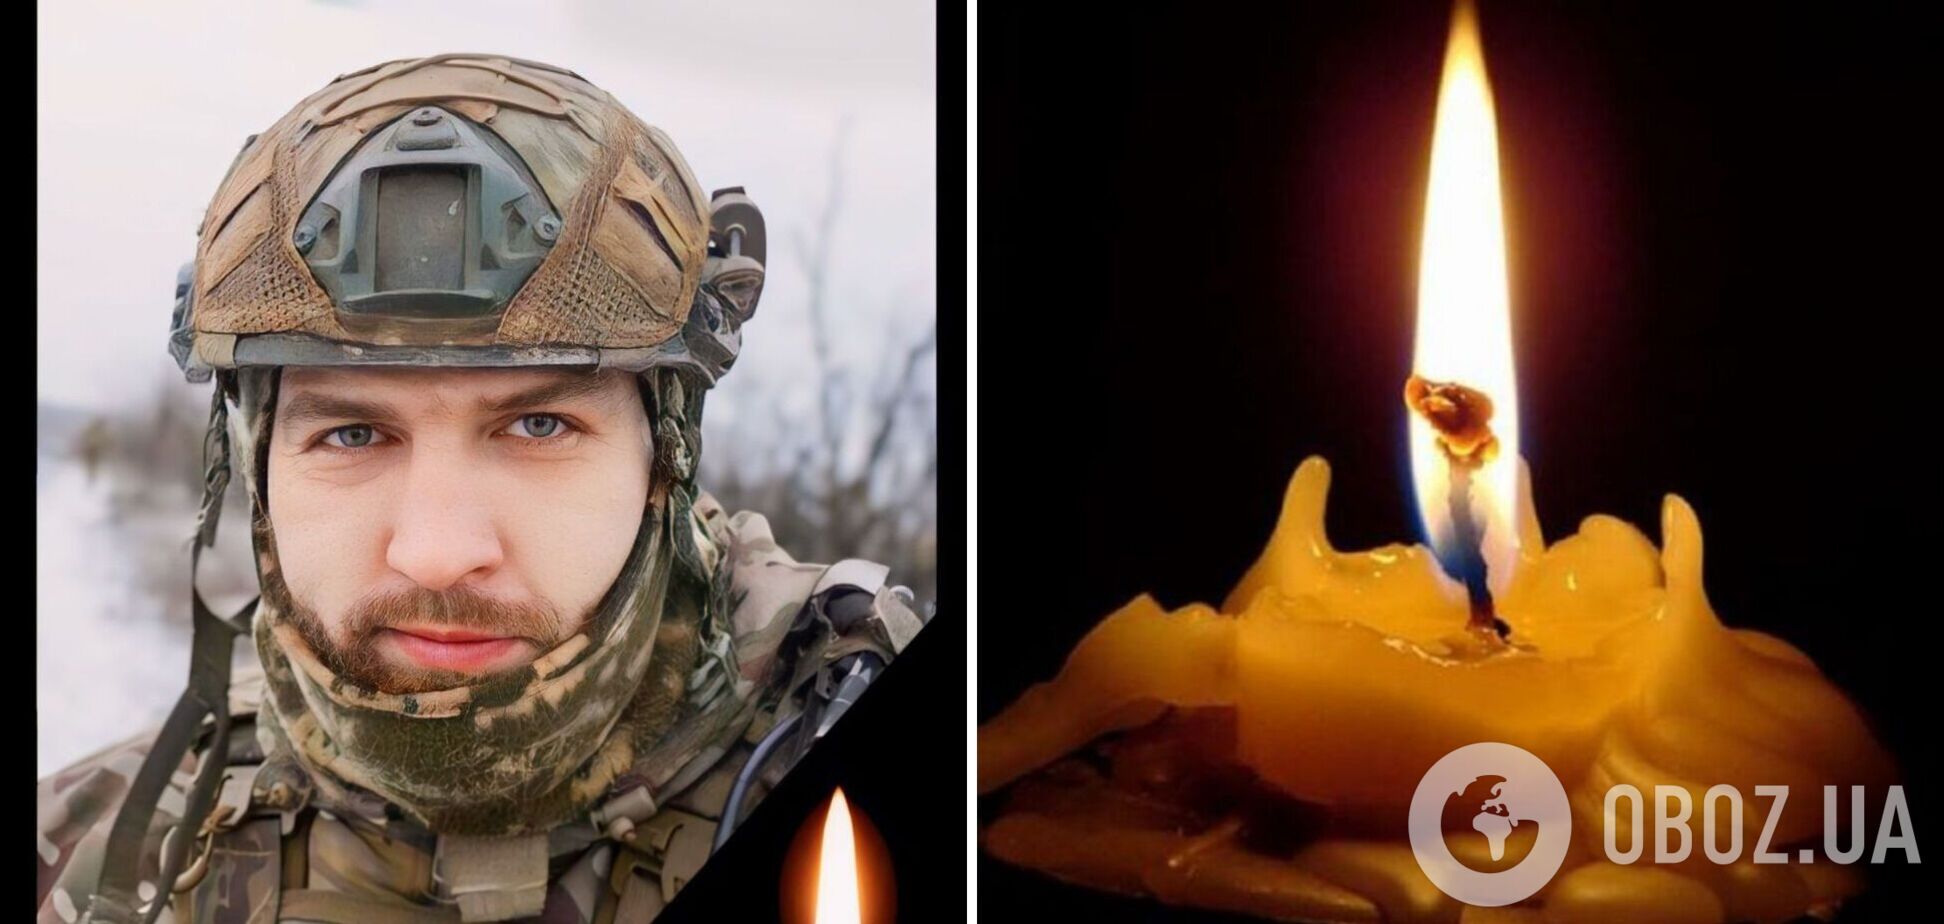 'Был отважным воином, готовым прийти на помощь': в боях за Украину погиб защитник из Хмельницкой области. Фото